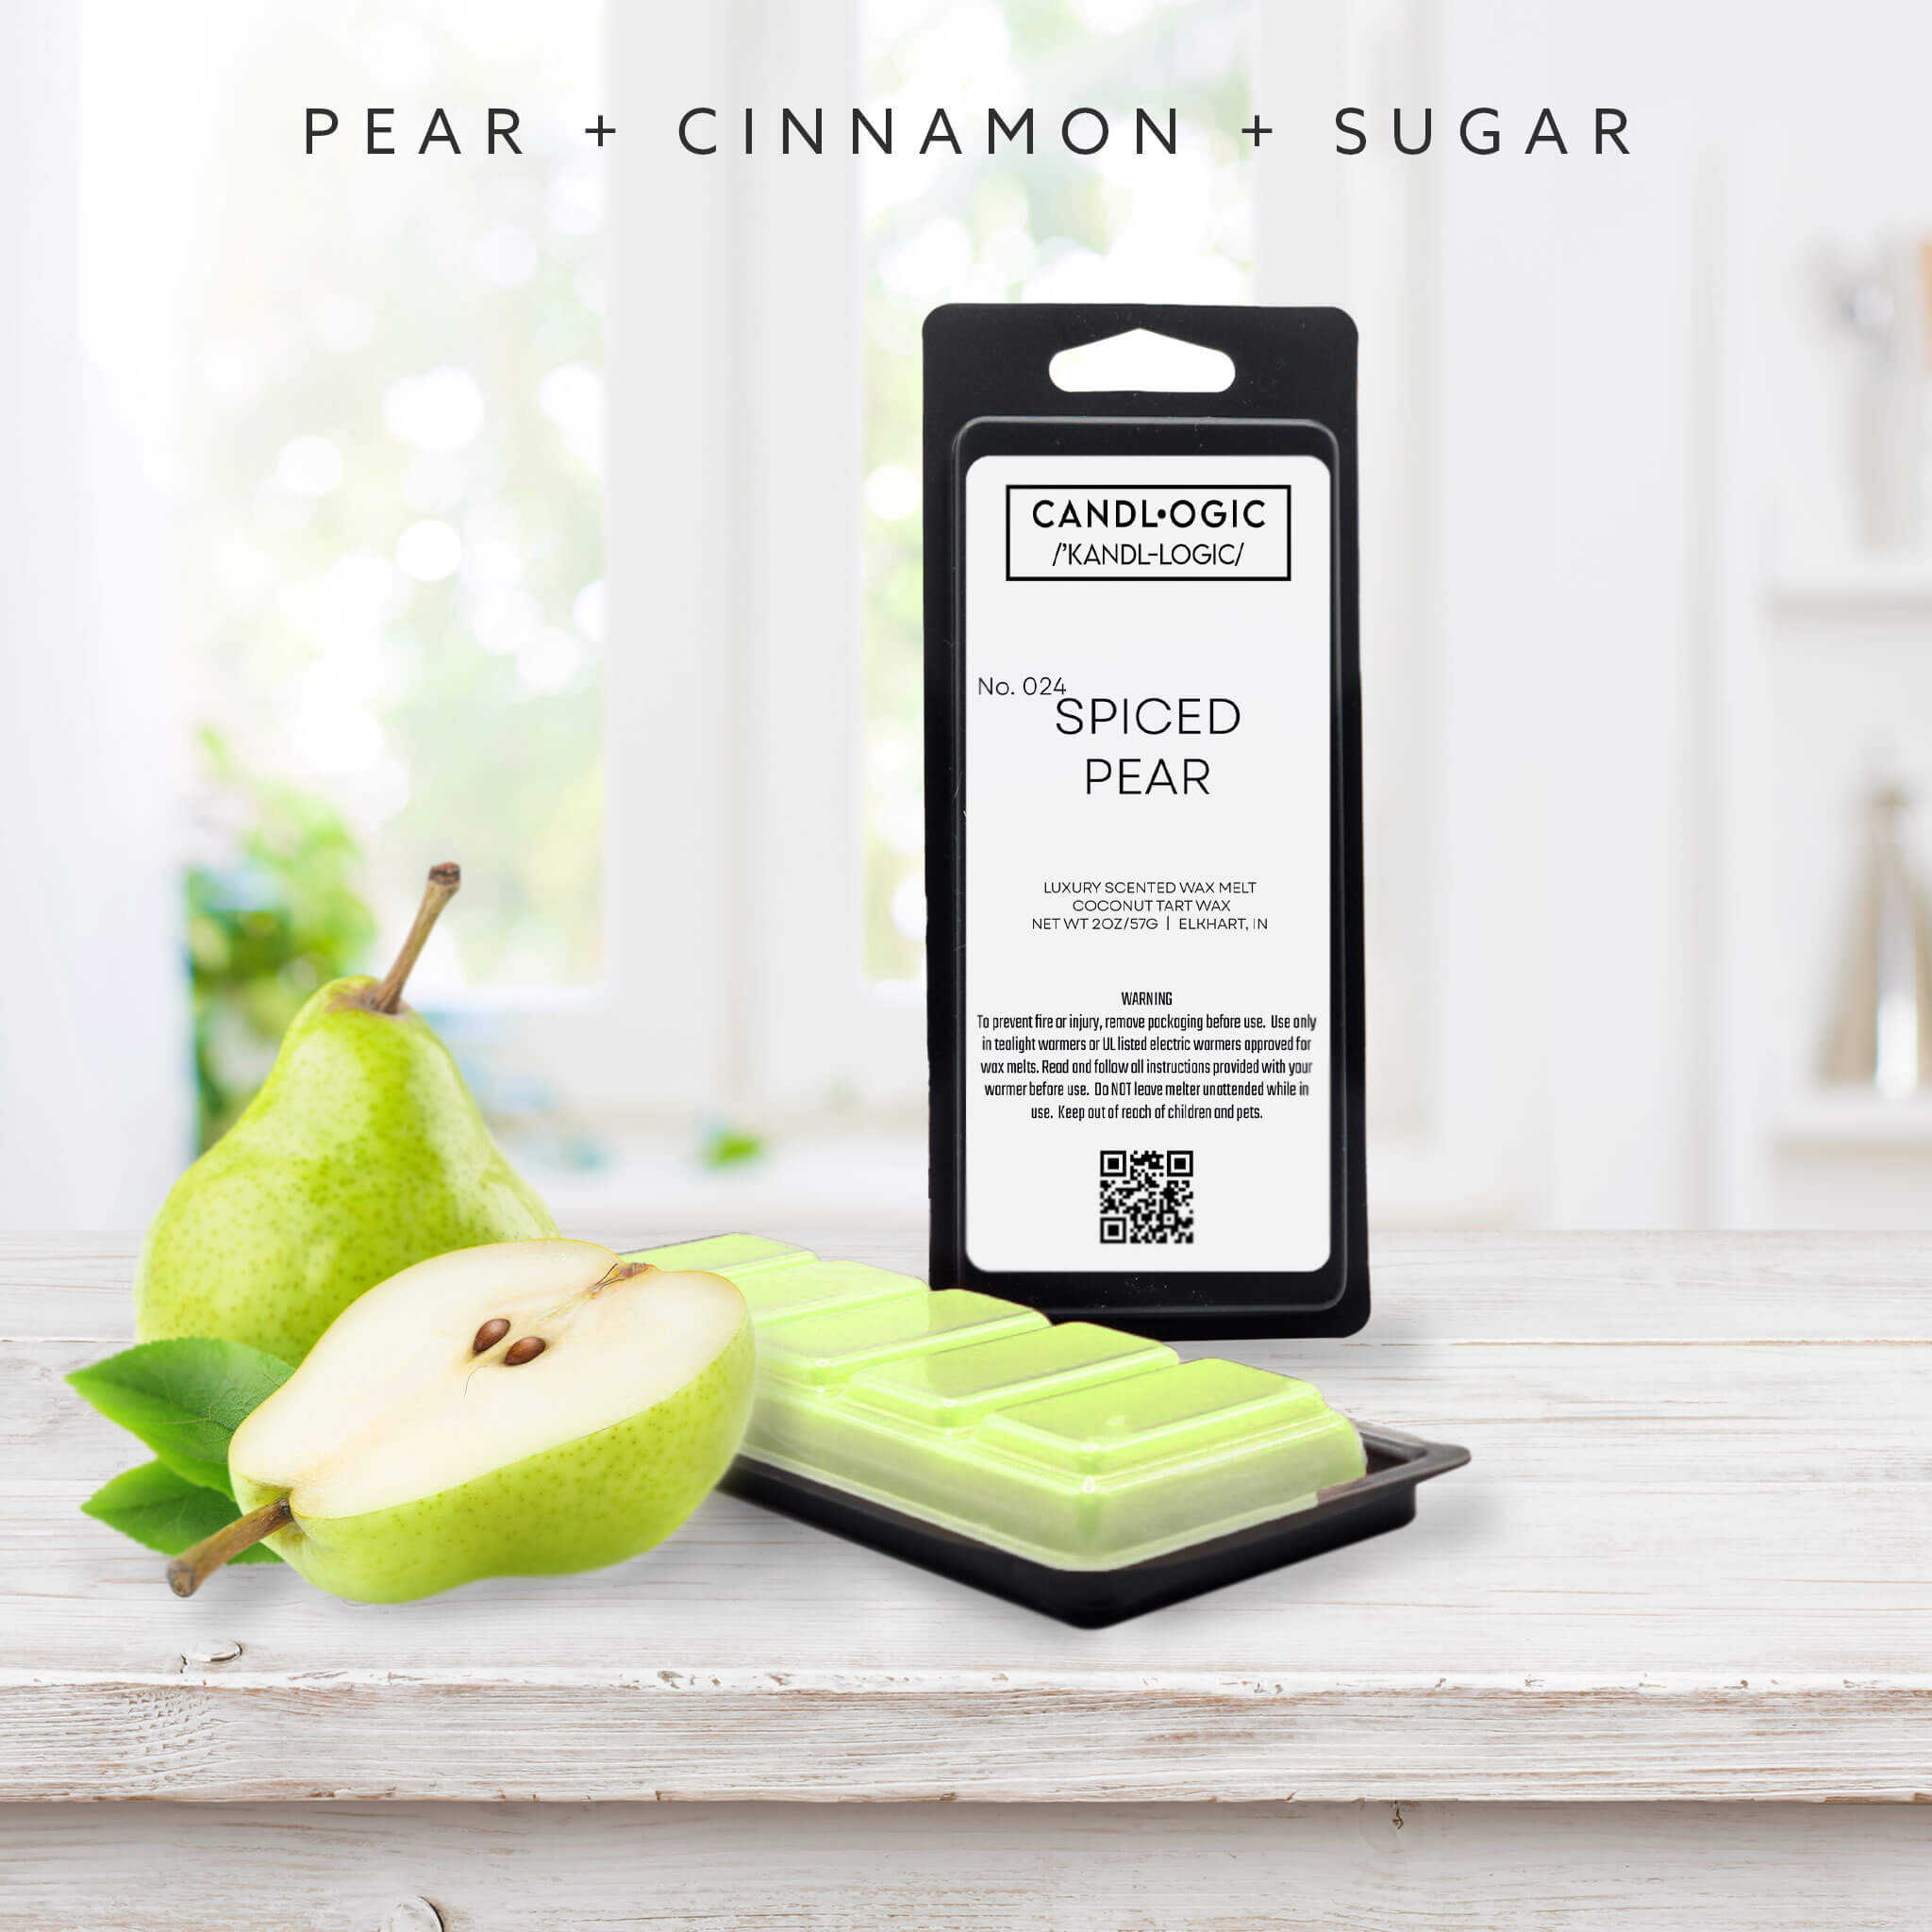 No. 024 Spiced Pear luxury scented wax melt - Pear, Cinnamon & Sugar –  Candl•ogic